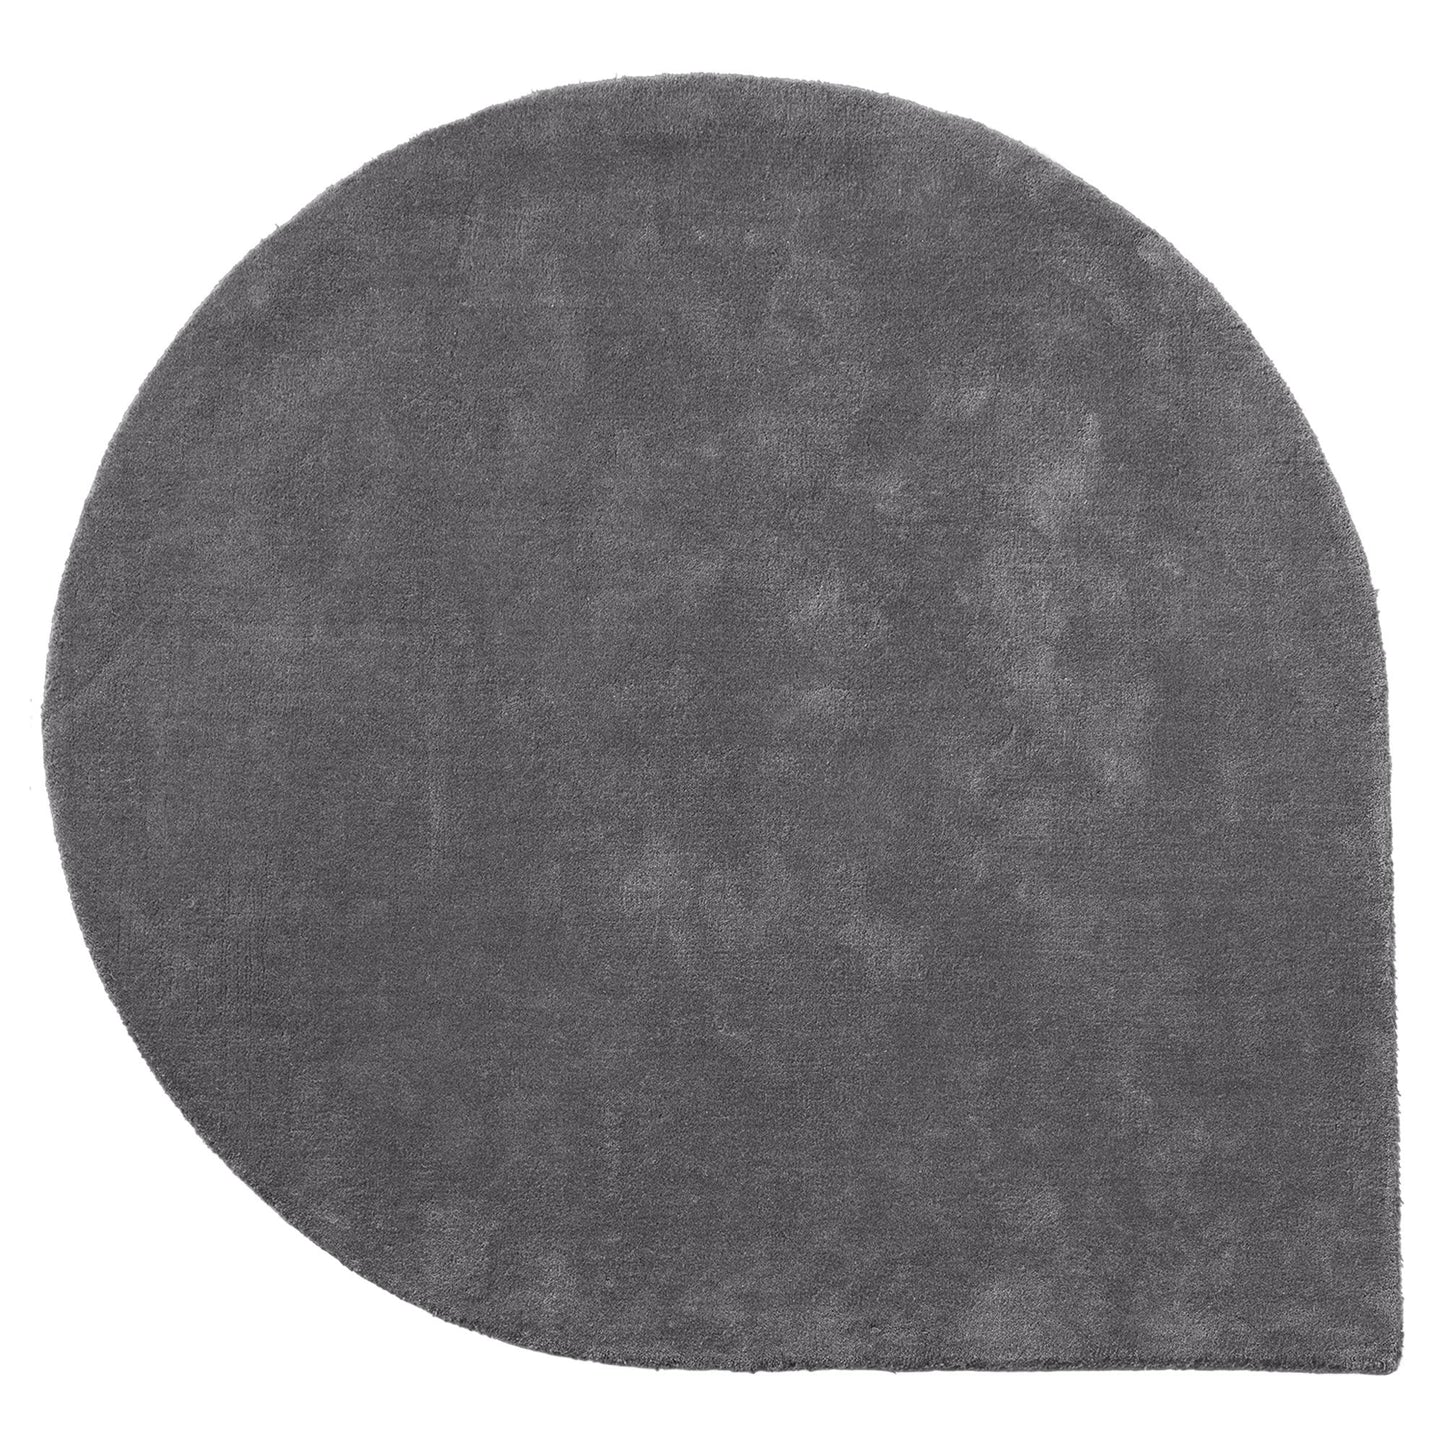 Stilla Carpet by AYTM #L265xW220 Dark Gray